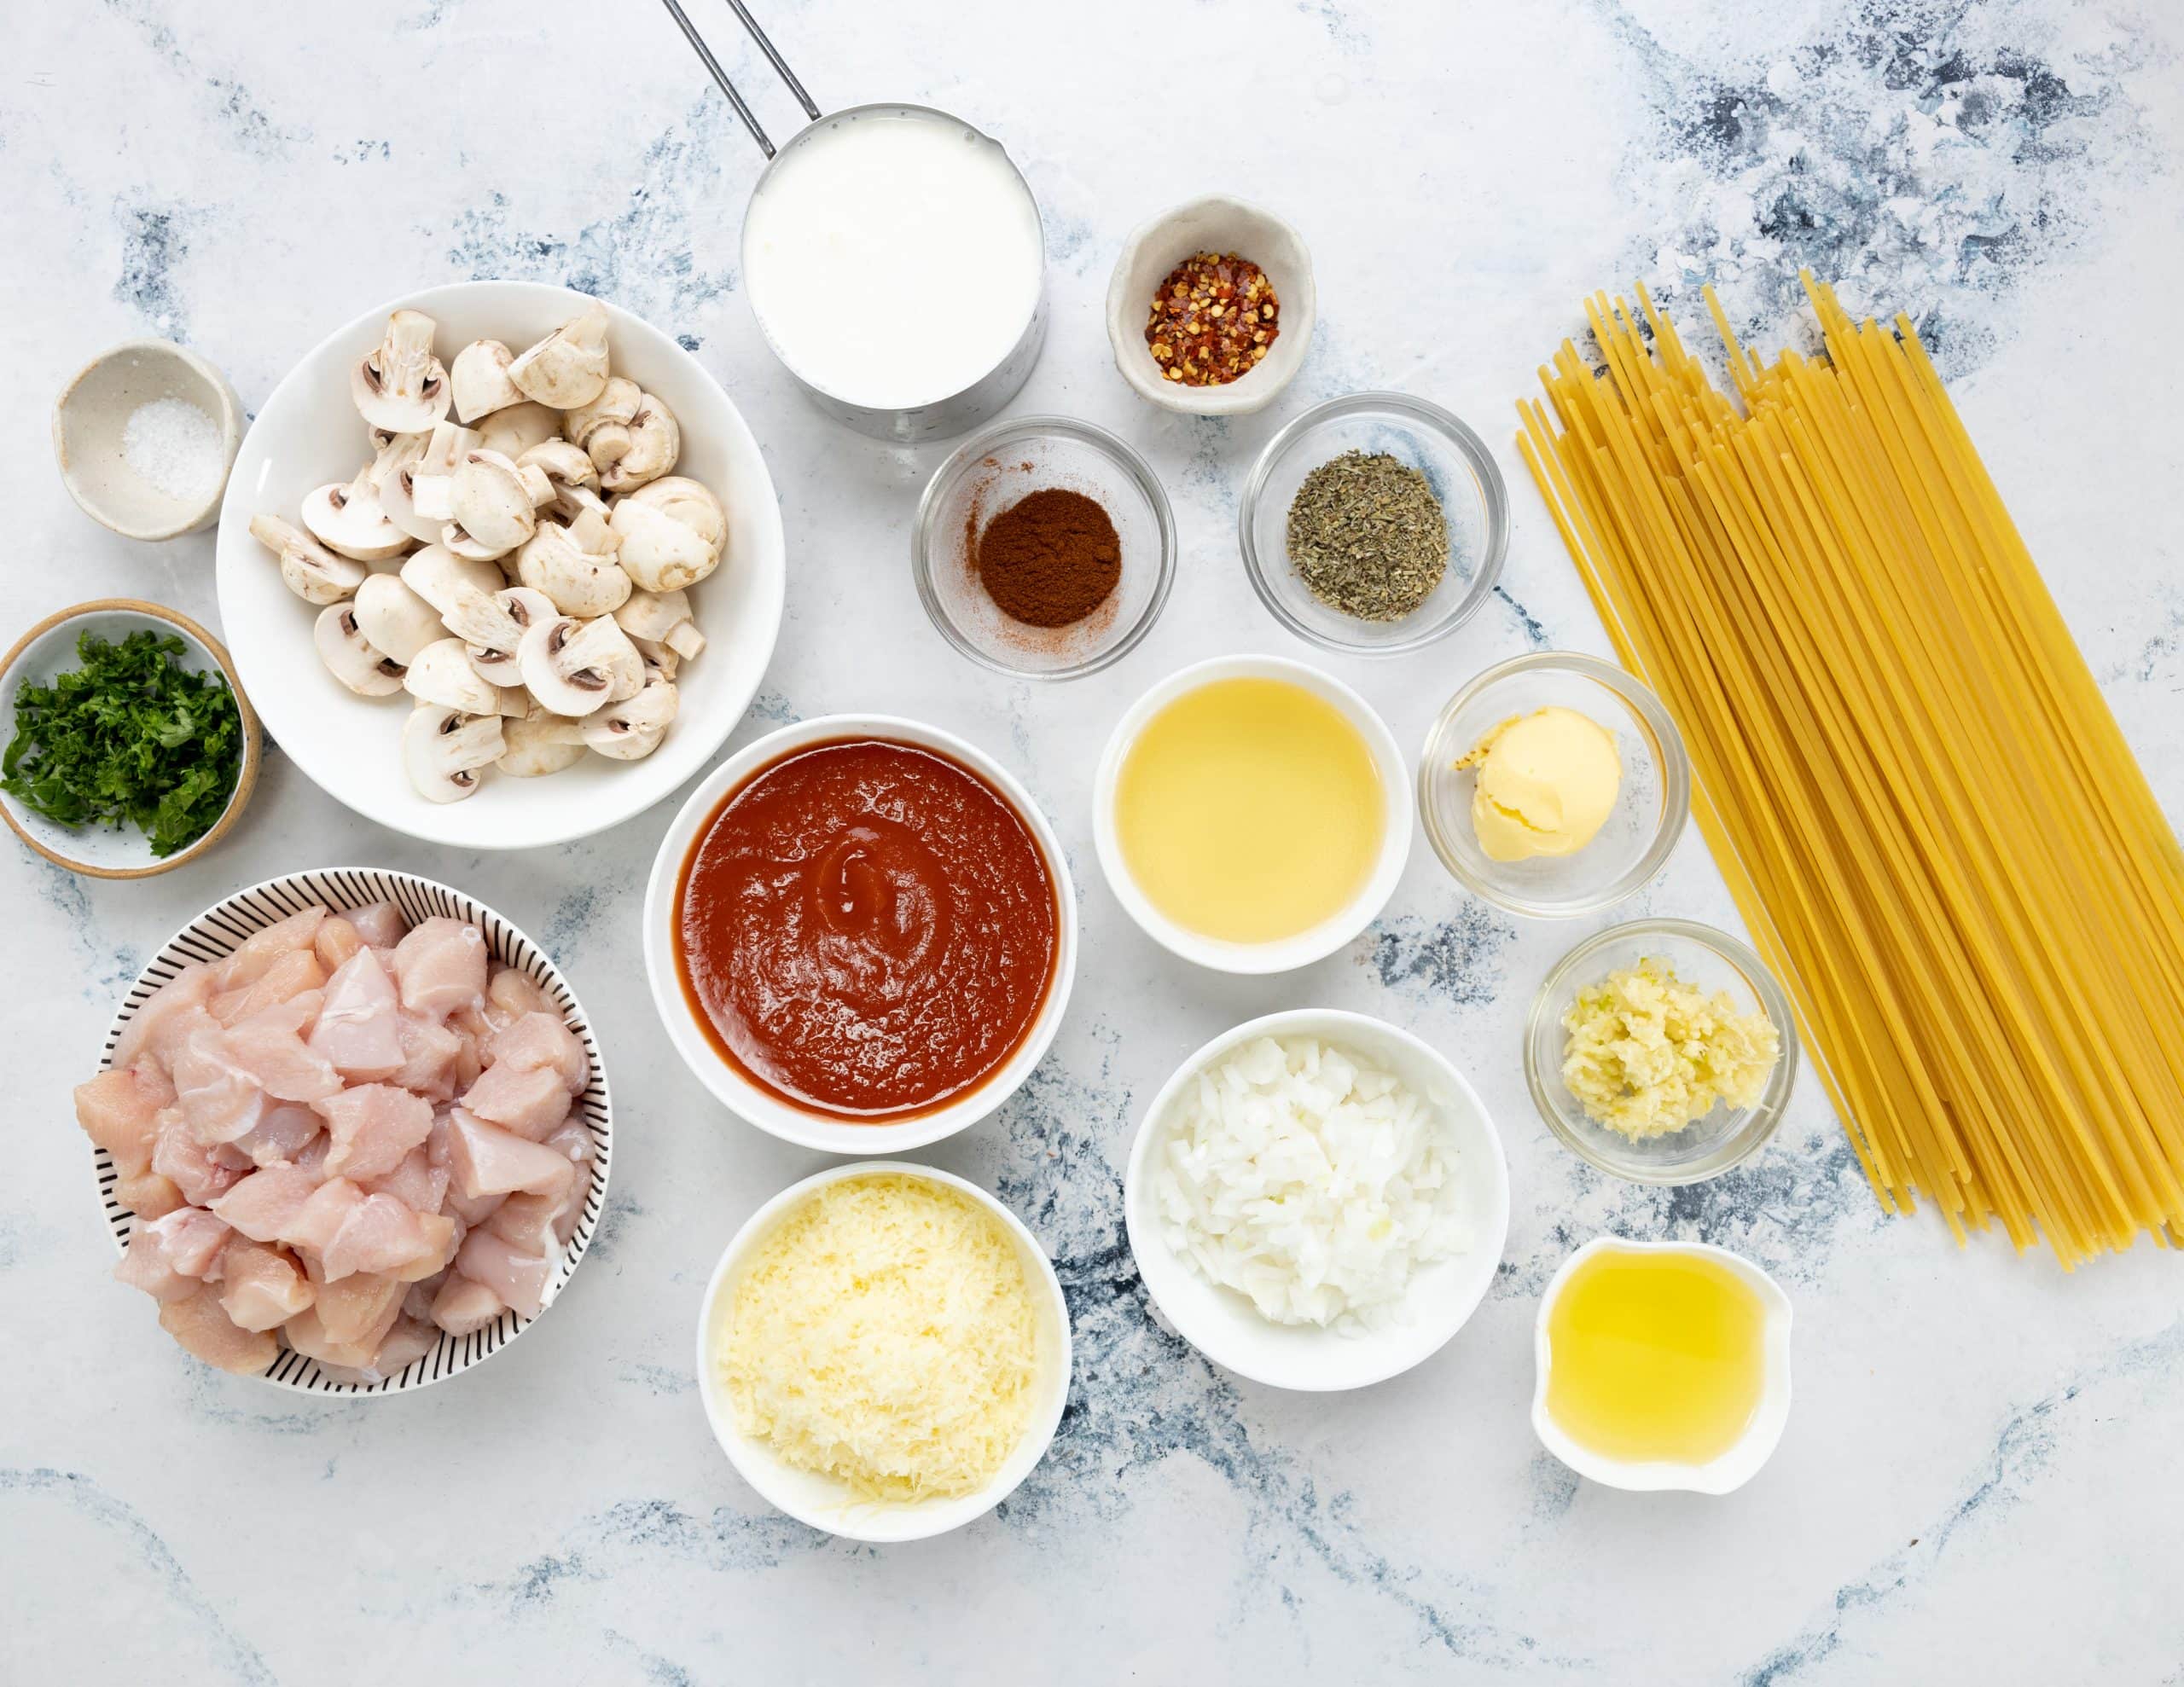 Ingredients for Chicken Pasta